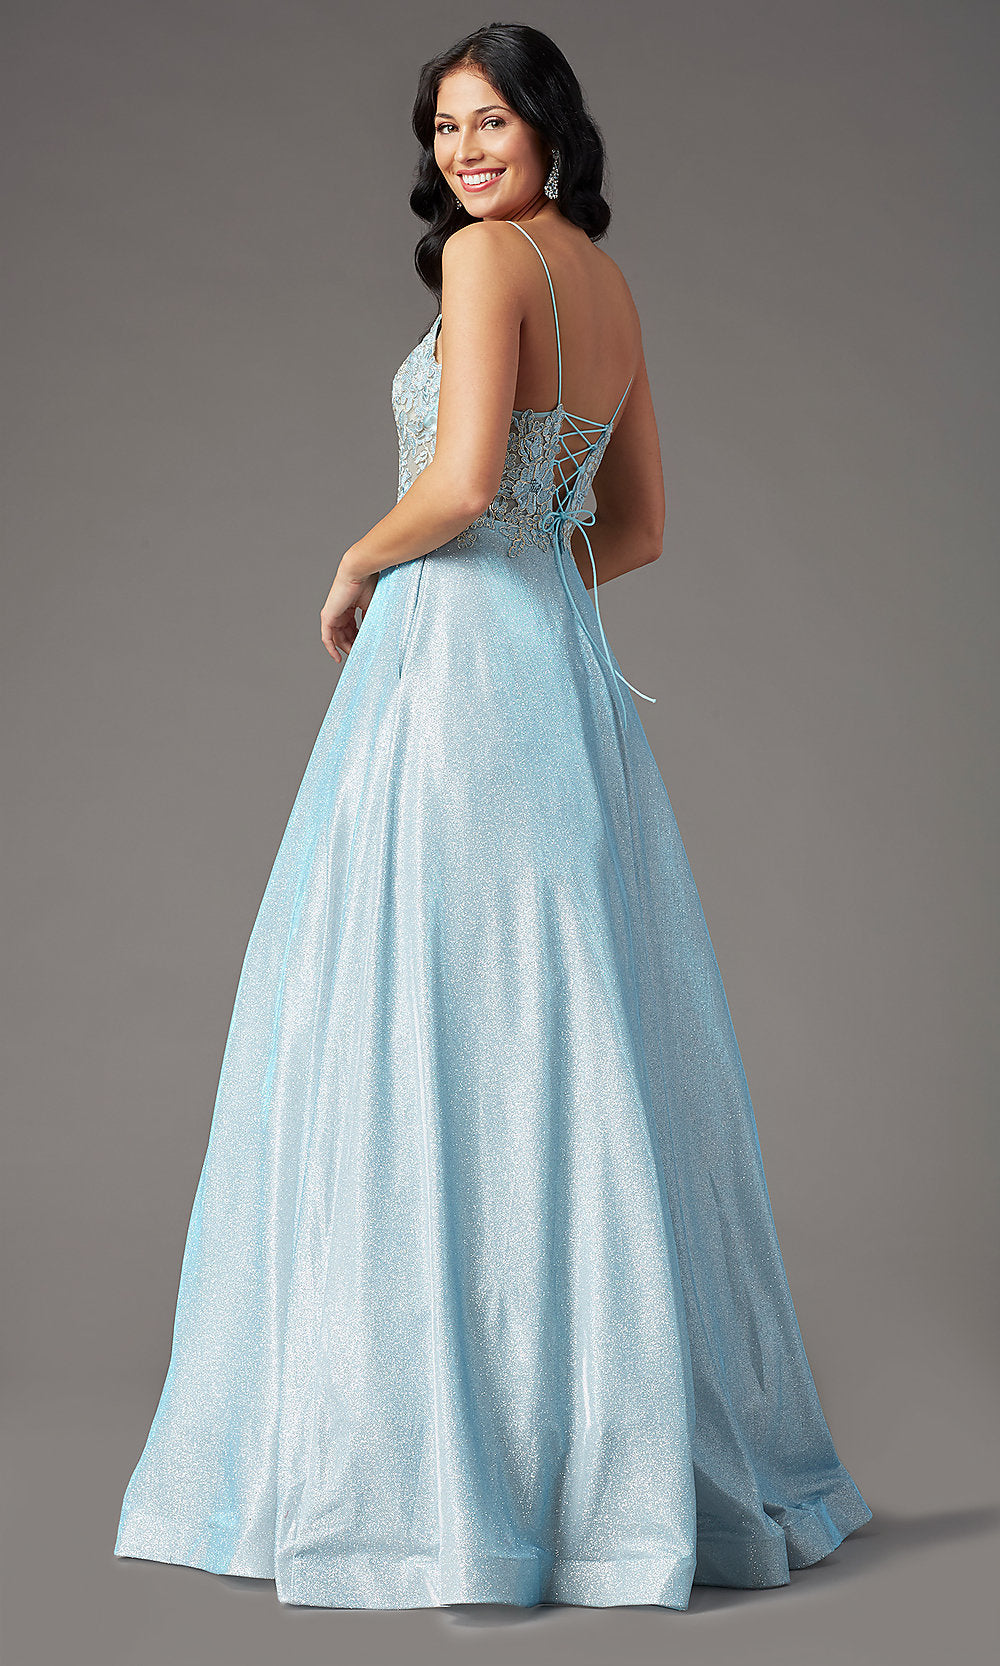  Glitter-Knit Lace-Bodice Prom Dress by PromGirl